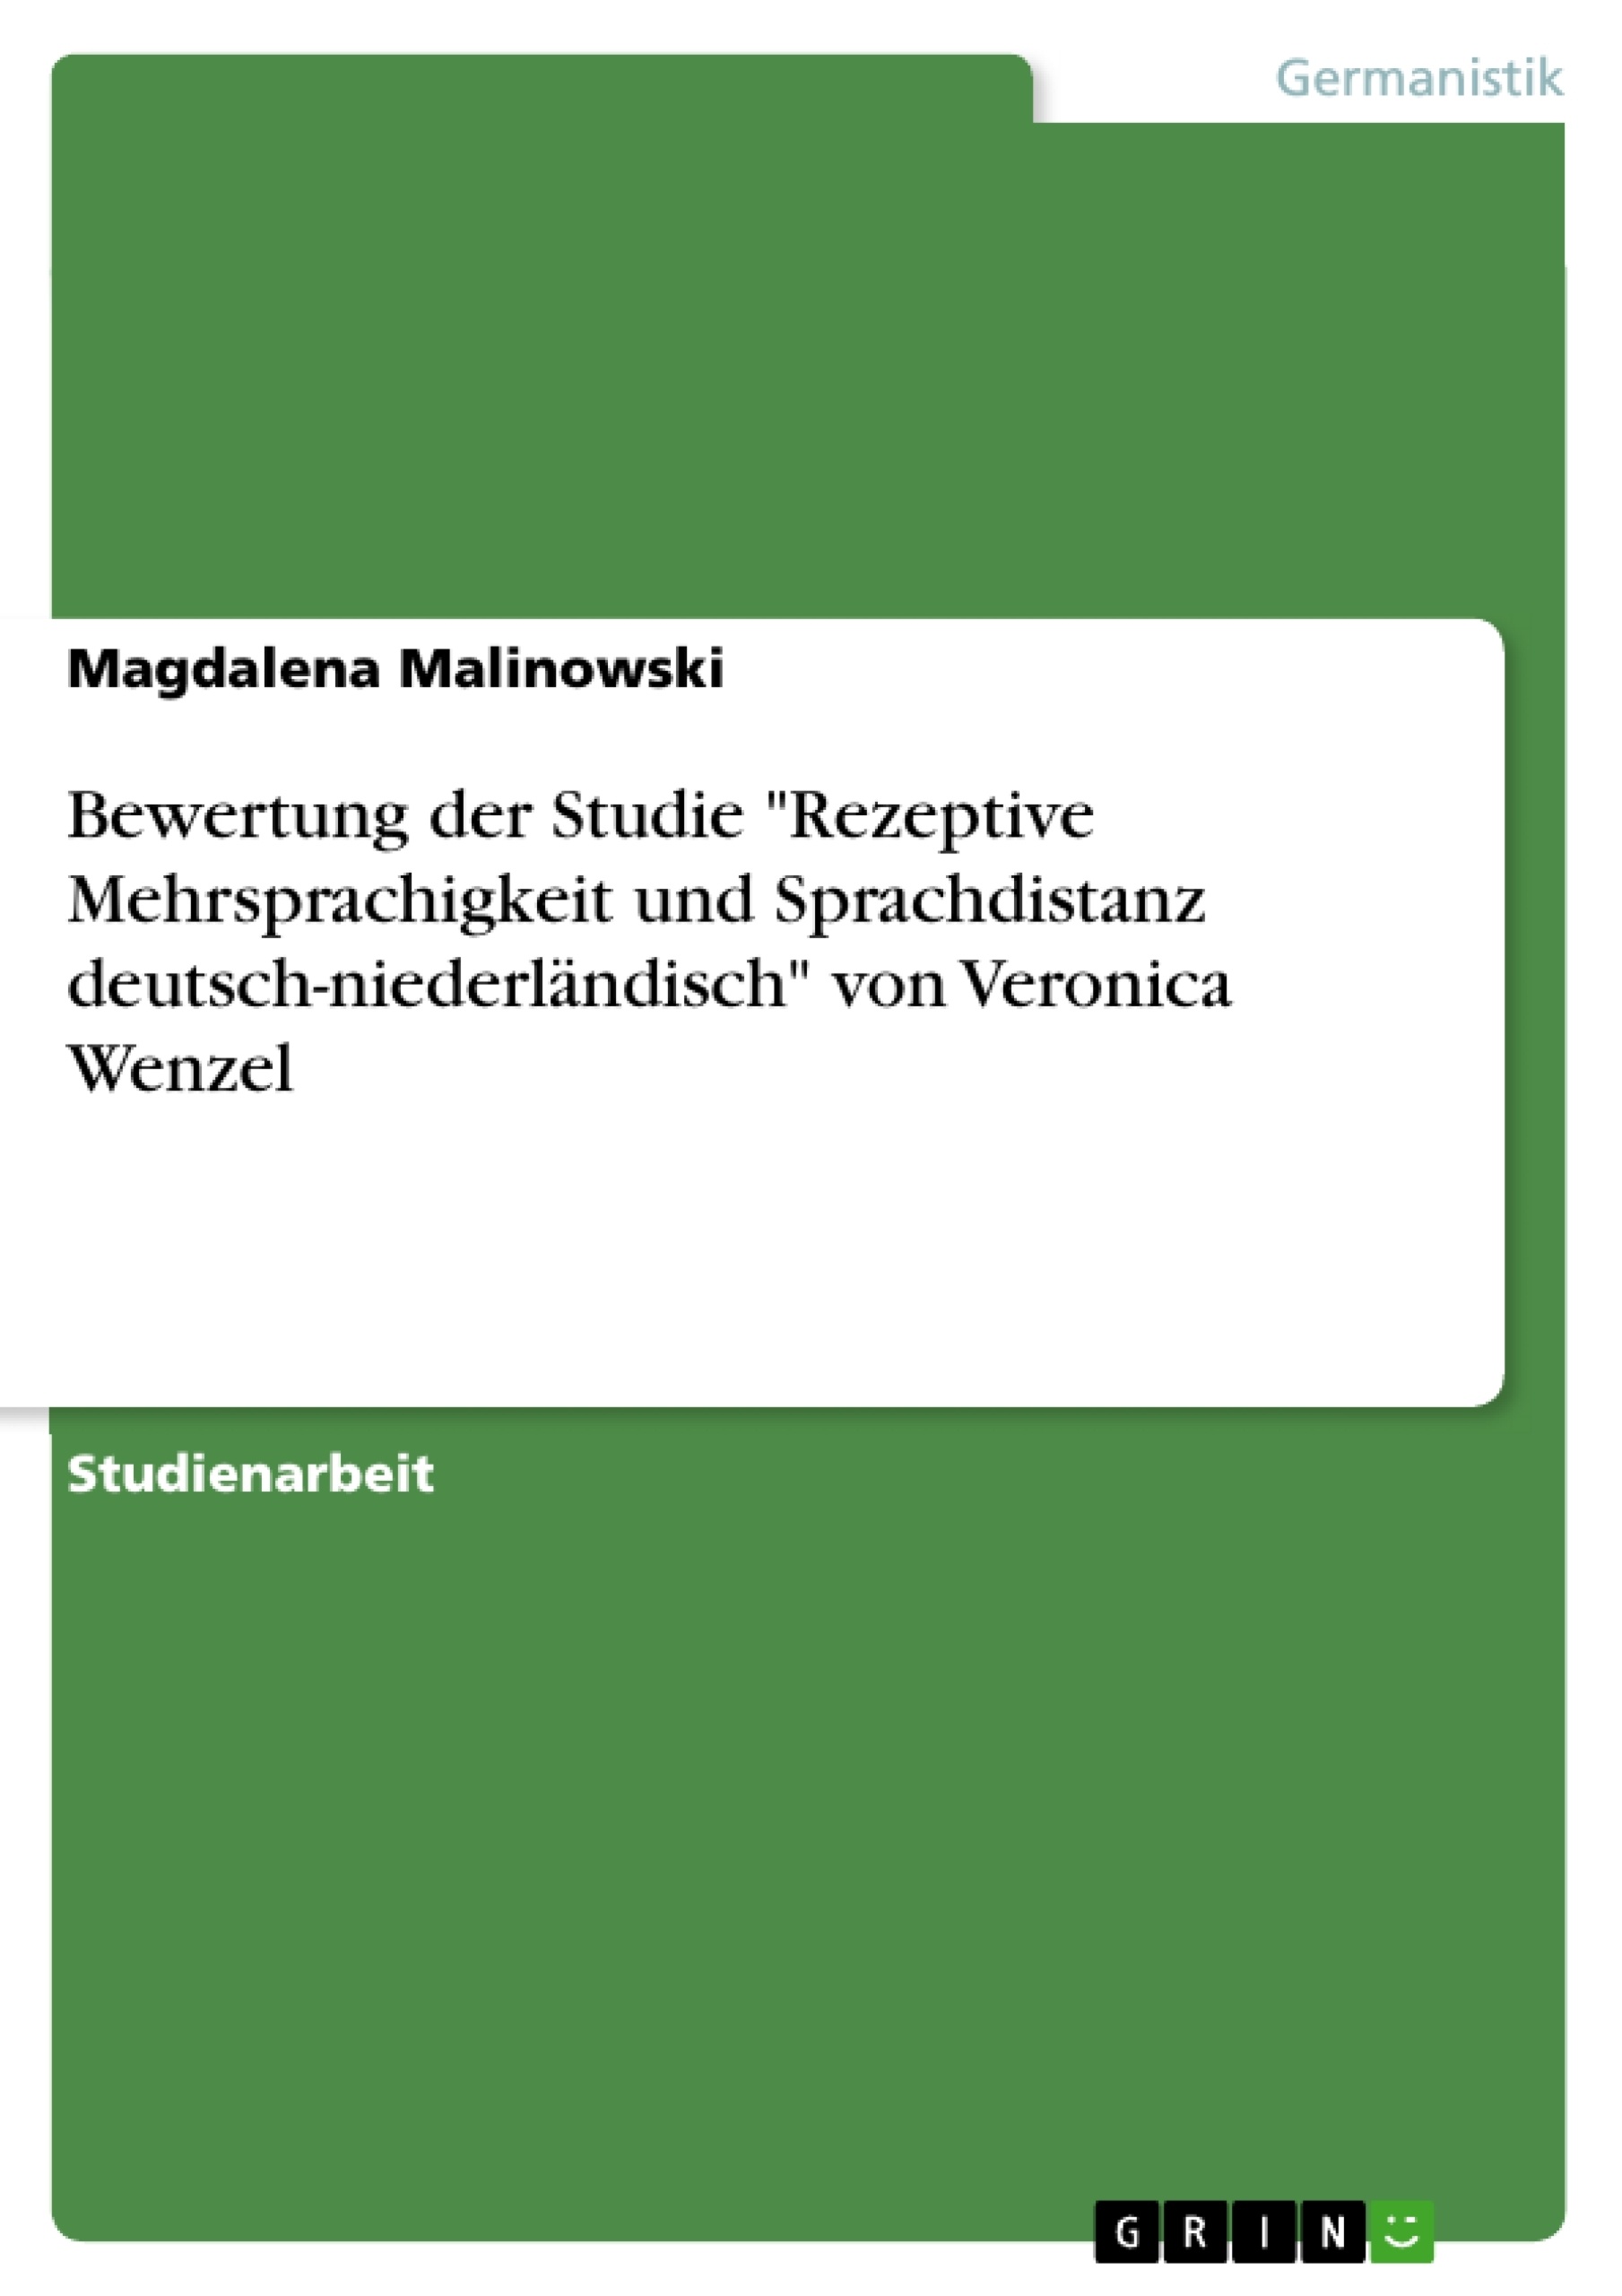 Title: Bewertung der Studie "Rezeptive Mehrsprachigkeit und Sprachdistanz deutsch-niederländisch" von Veronica Wenzel